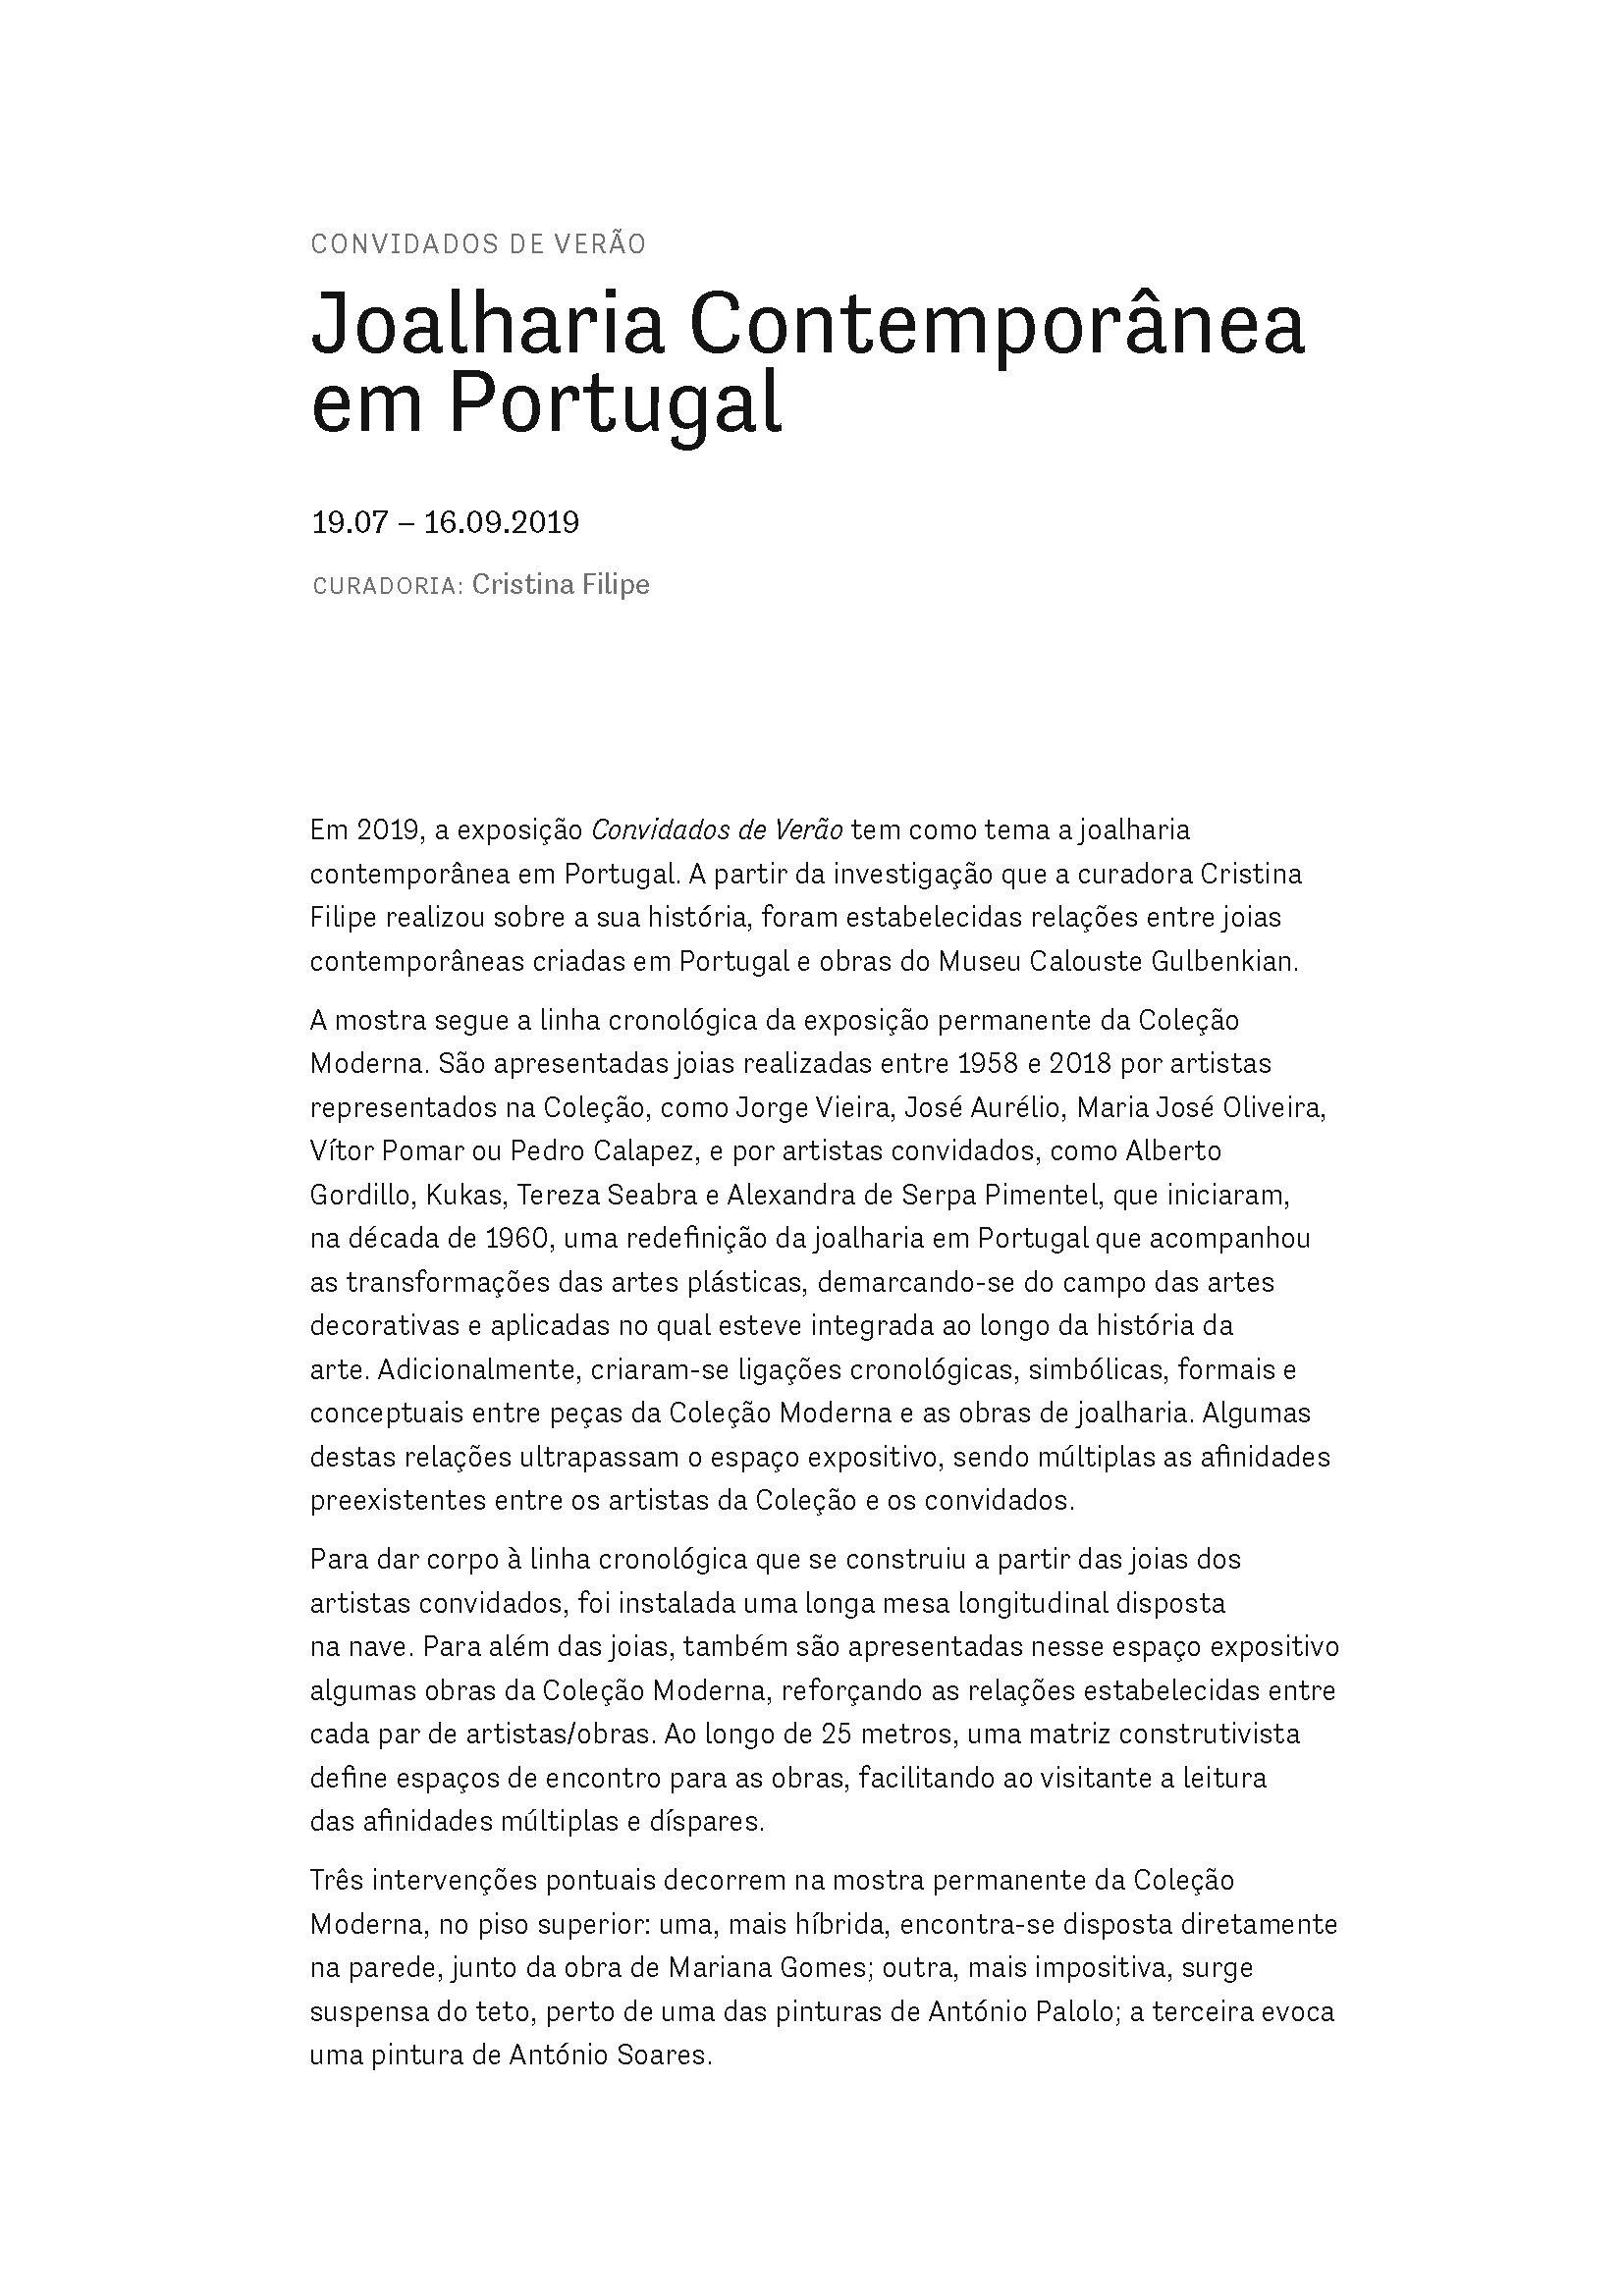 Convidados de Verão. Joalharia Contemporânea em Portugal